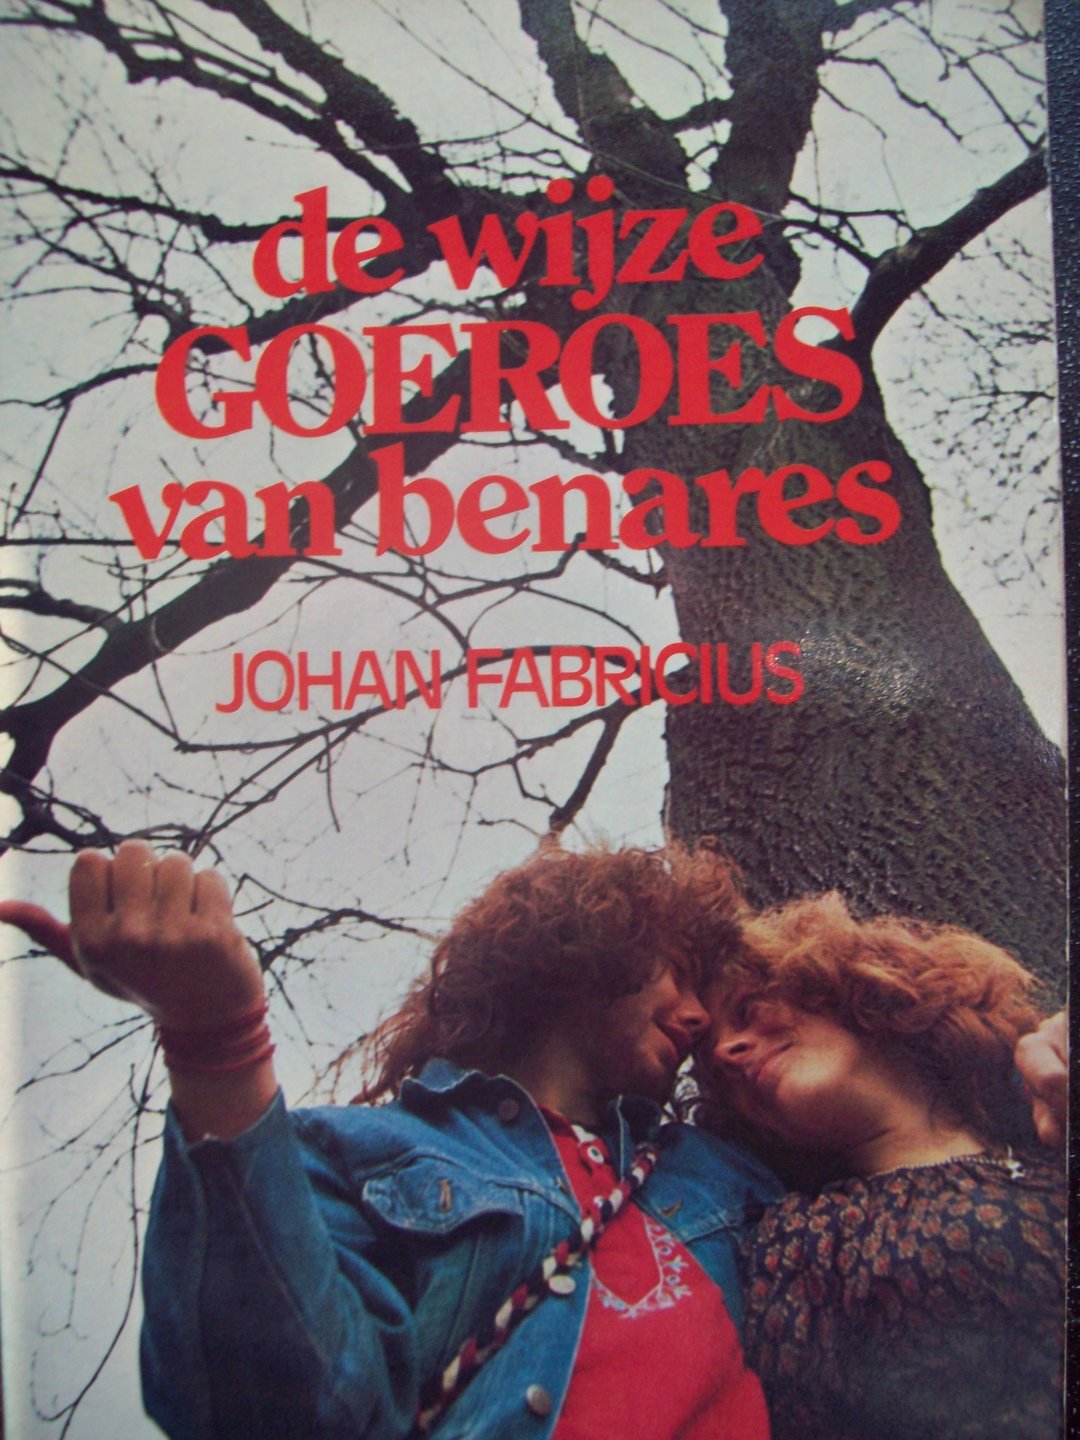 Johan Fabricius - "de wijze Goeroes van benares"